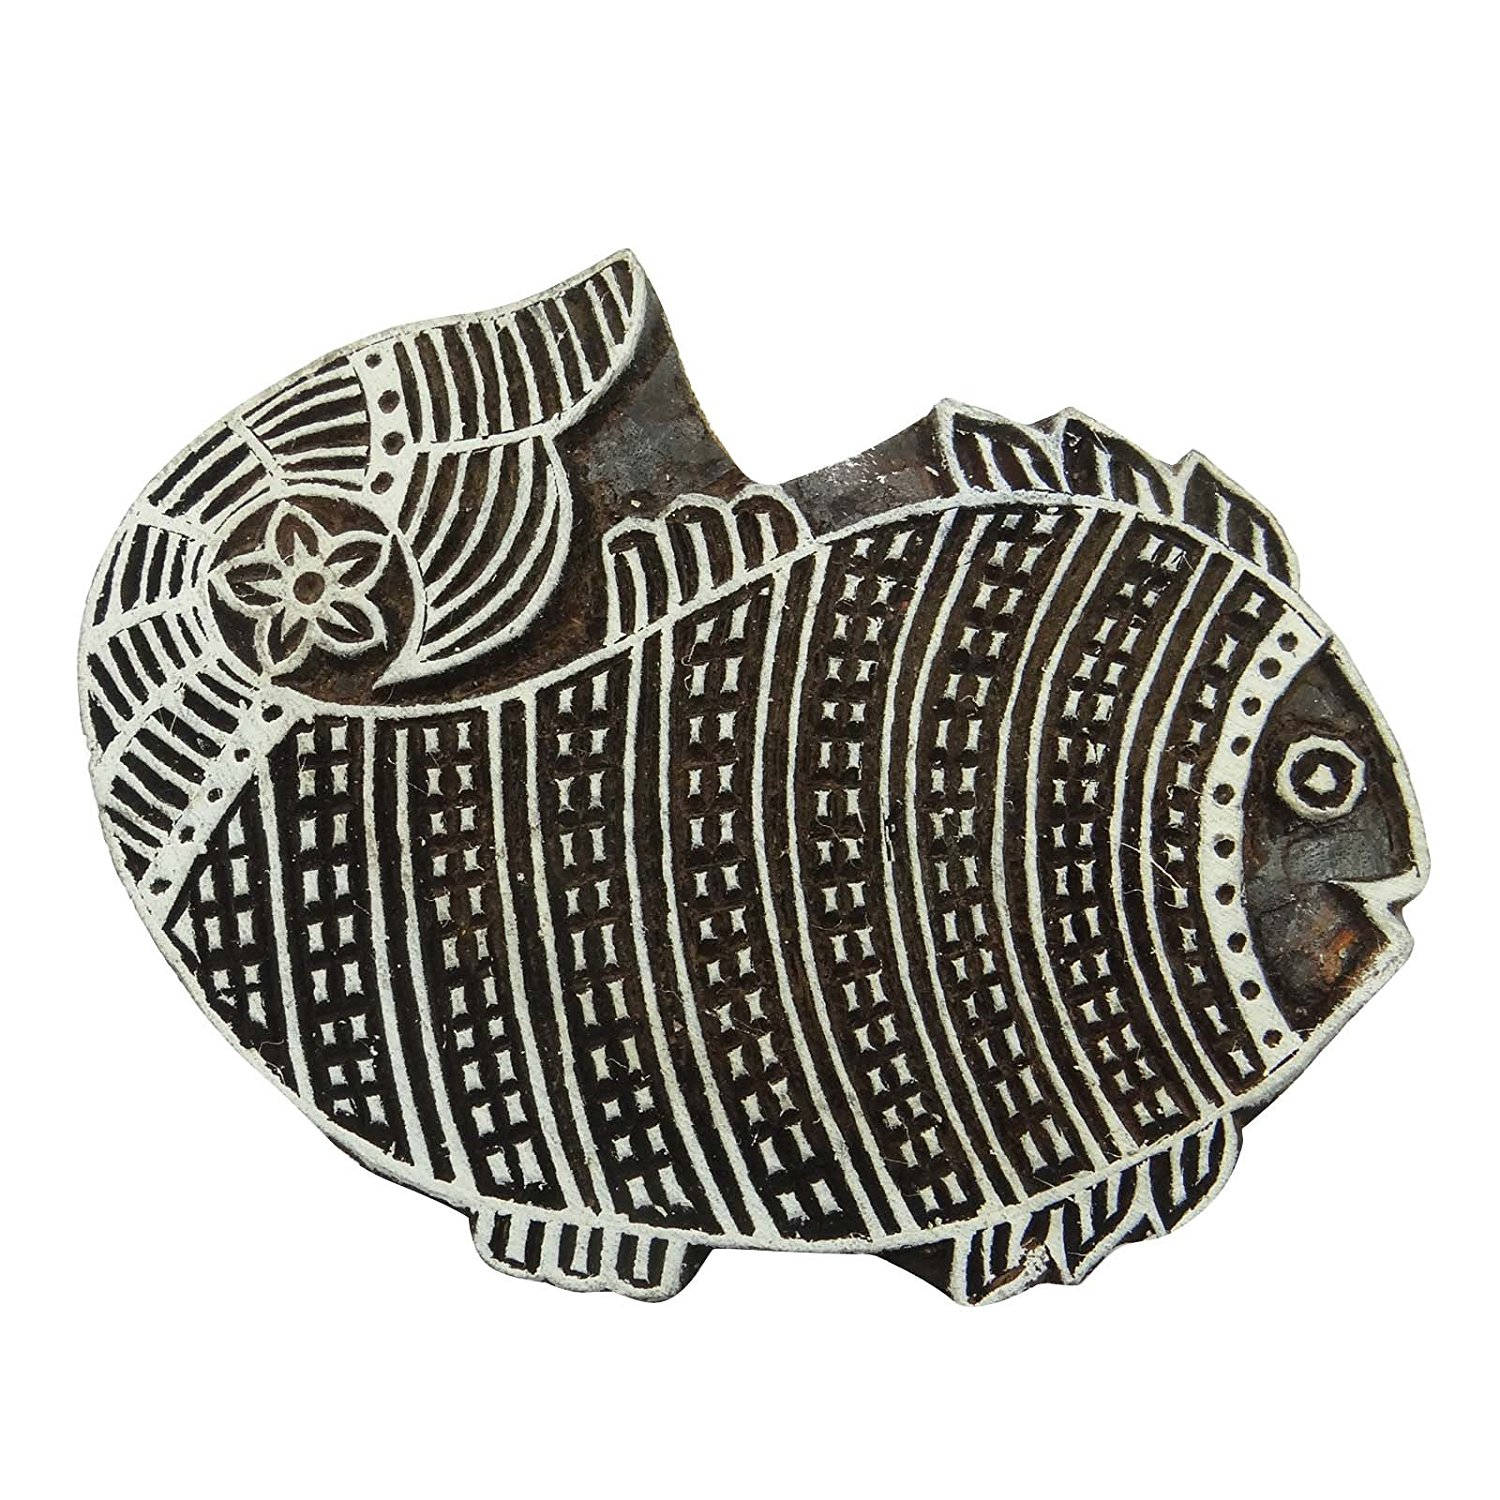 Fish Indian Wood Block Art Handcarved Printing Block Textile Stamp 